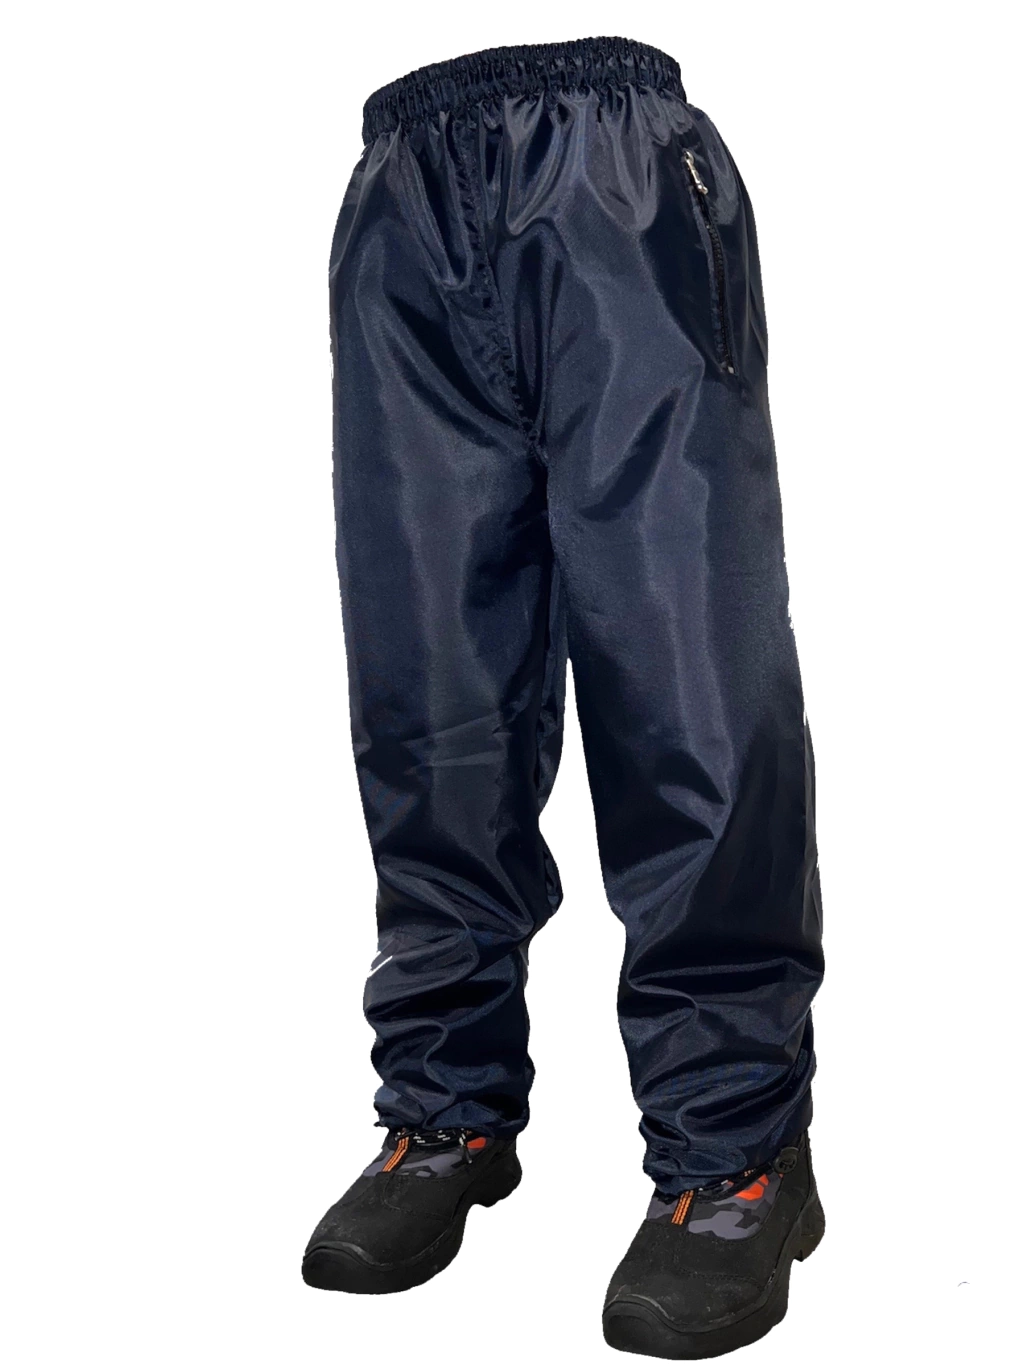 Pantalon Impermeable Niños/as Polar Nieve Jeans710